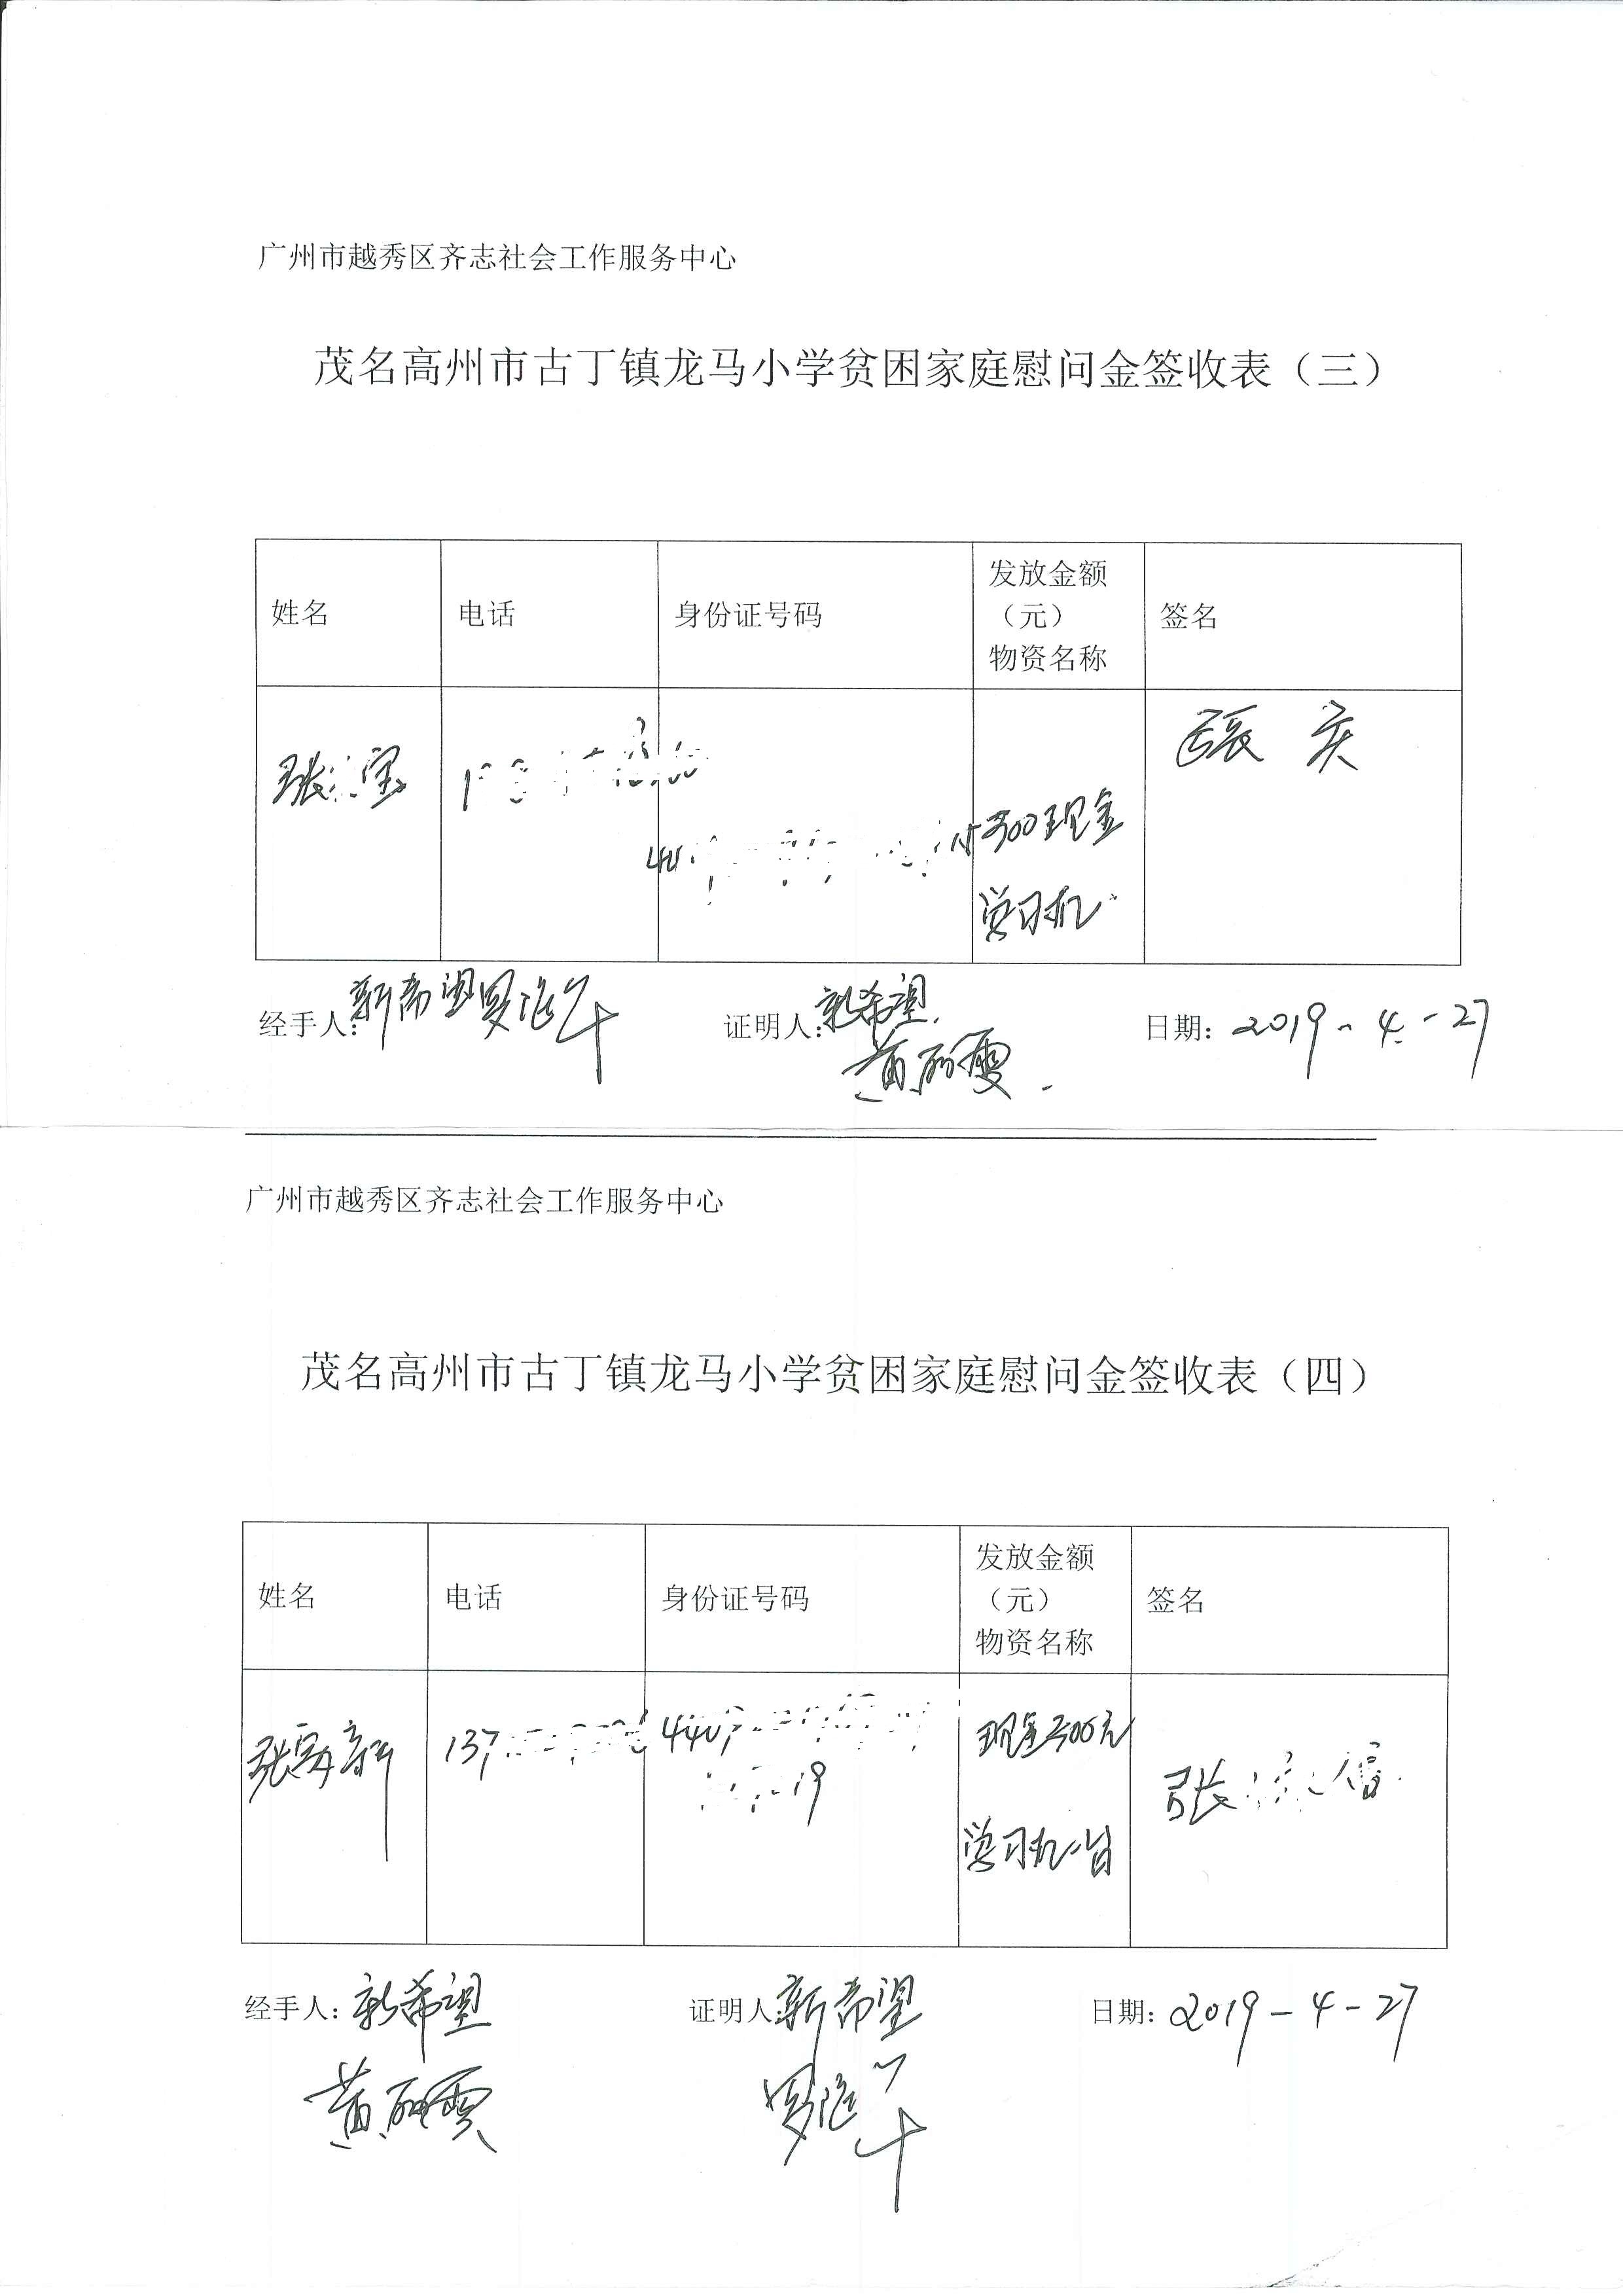 龙马小学慰问金及学习机签收单 (2)2.jpg